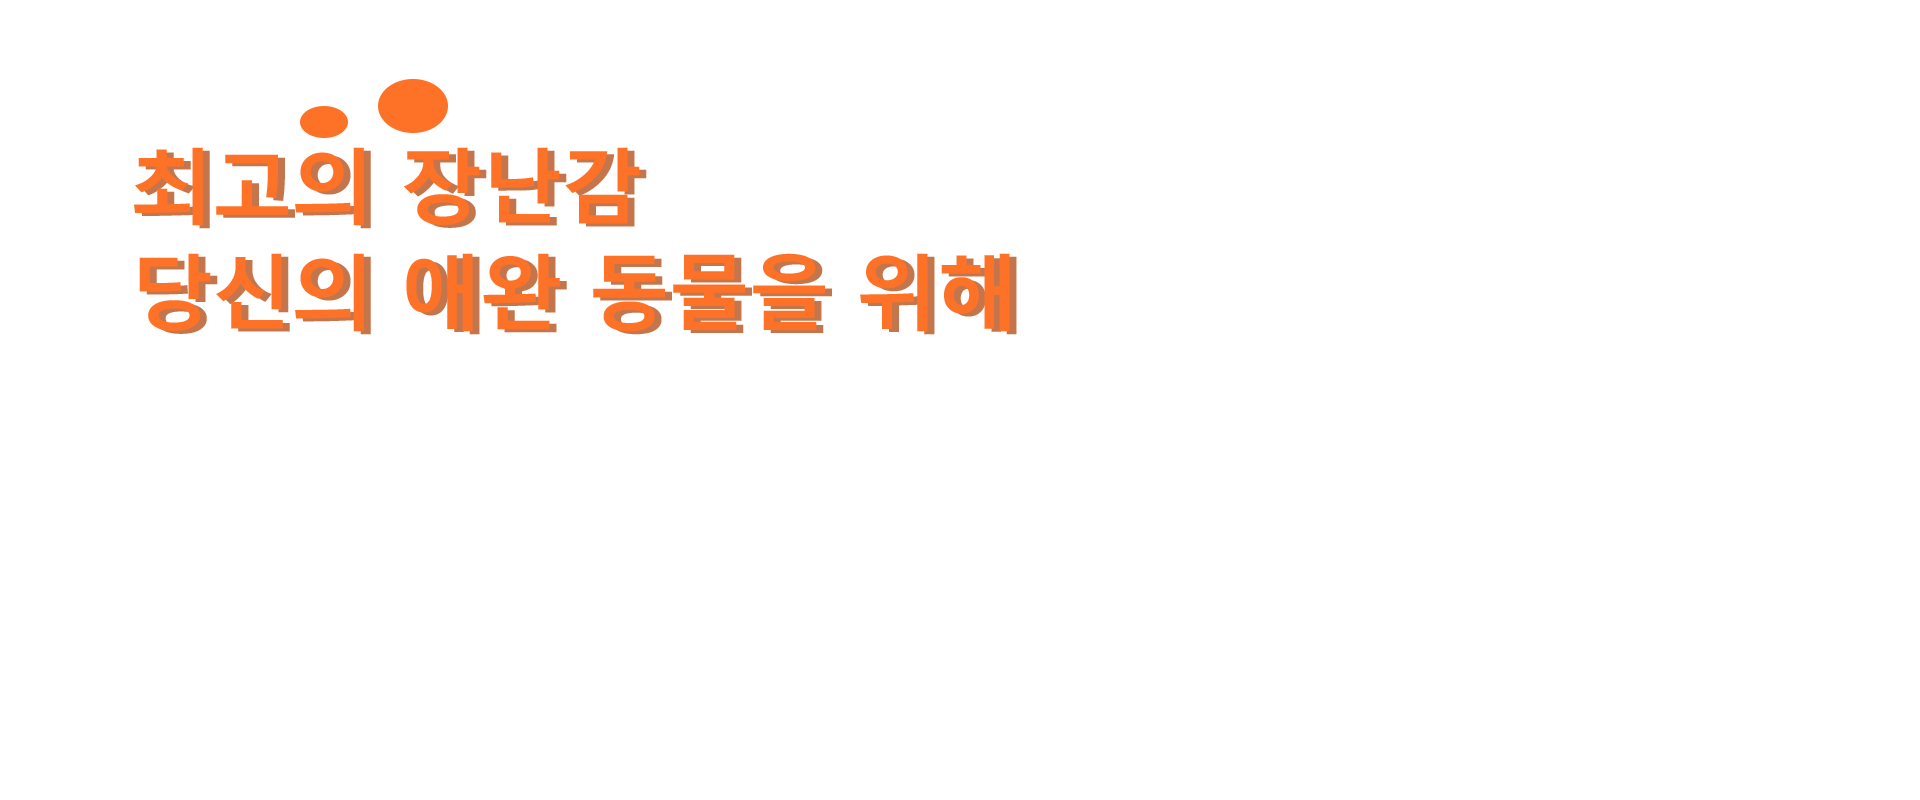 韩语内页2